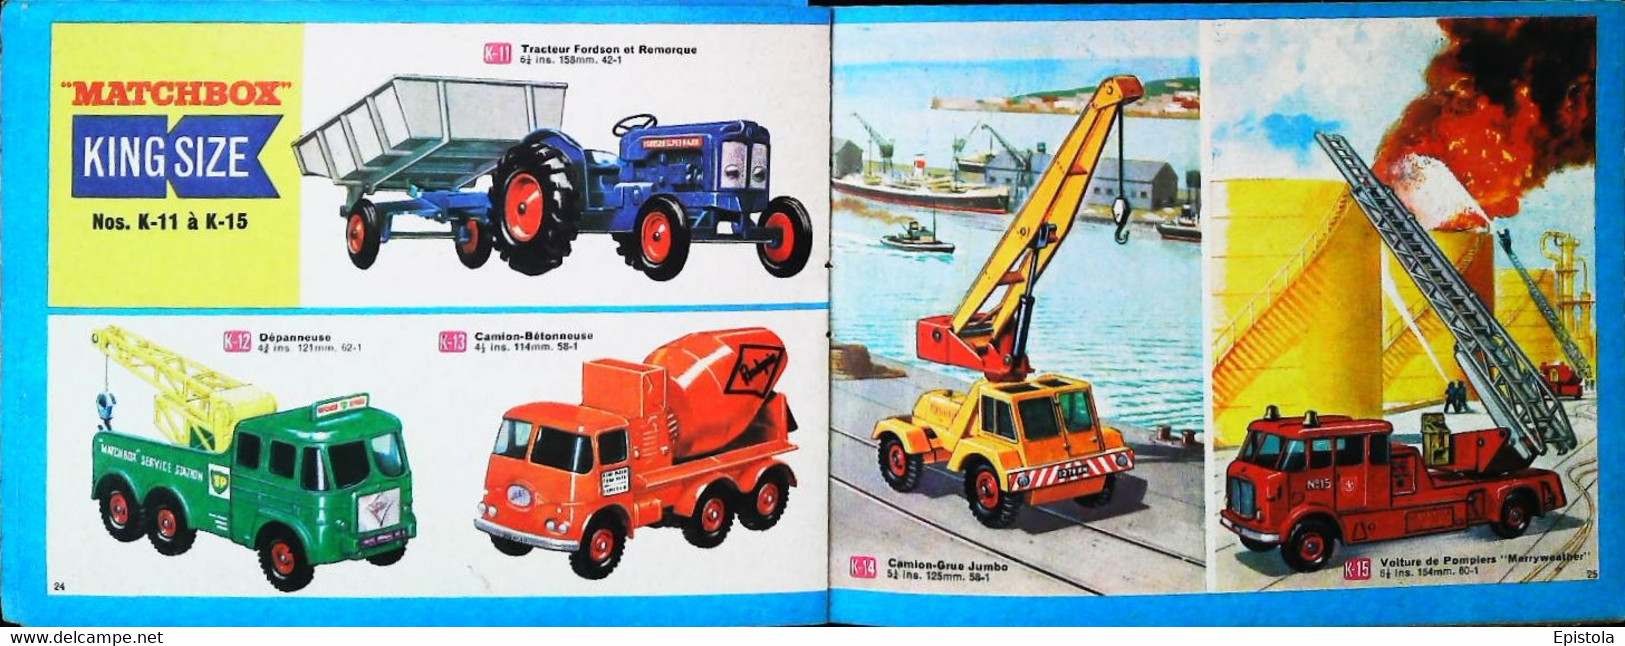 ► Catalogue 1968 MATCHBOX 38 Pages 14 x 10.5 cm - Jouet (Modeles Reduits automobile taille boite alumettes) Die-cast toy